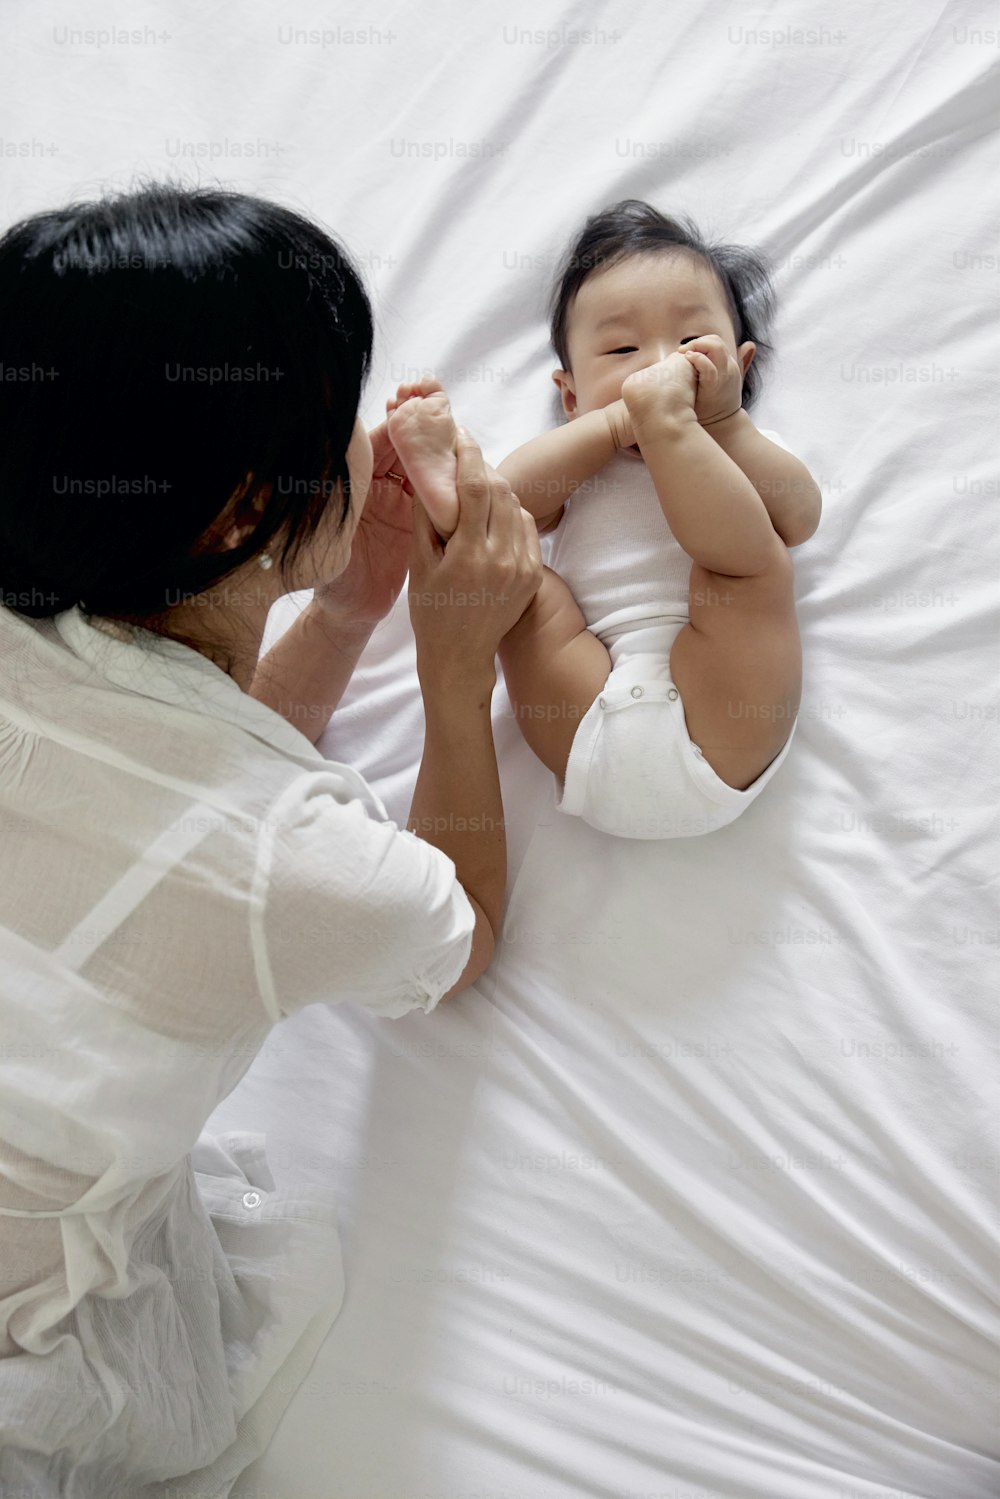 Una mujer acostada en una cama sosteniendo a un bebé